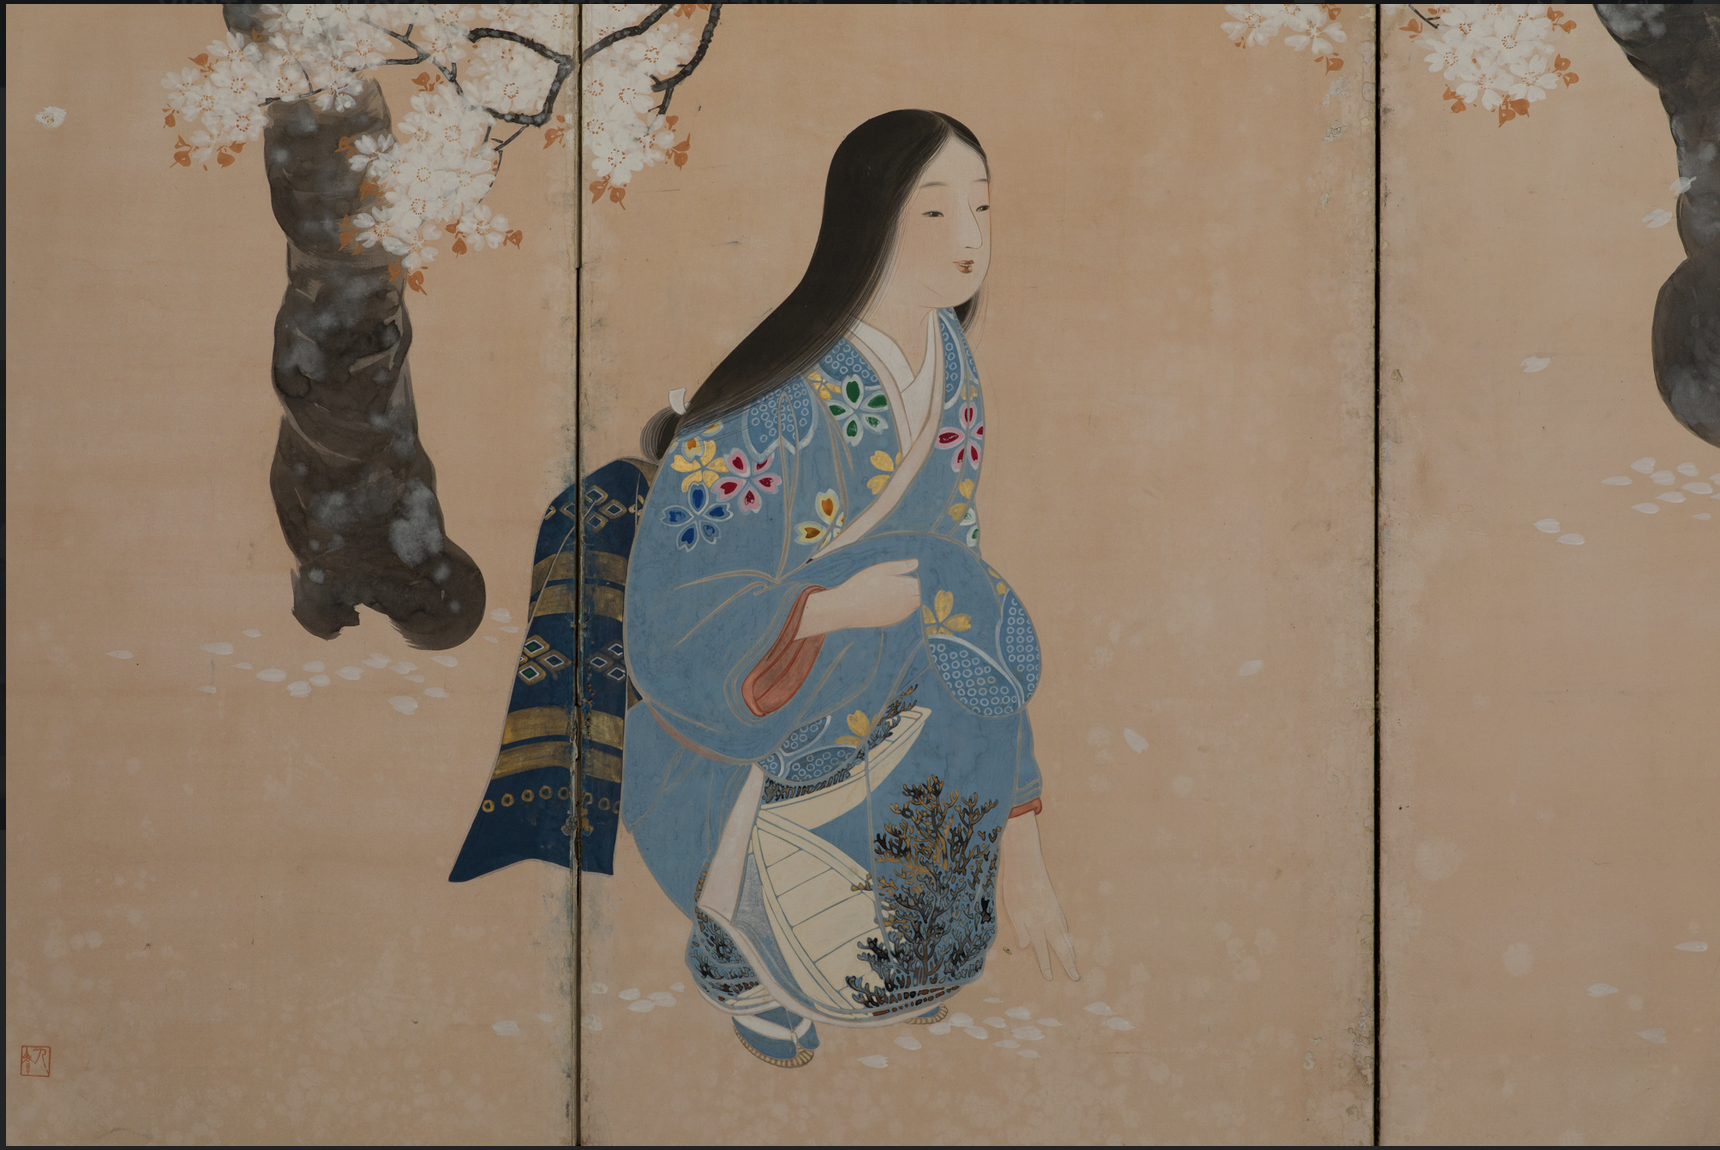 KIMONO, riflessi d'arte tra Giappone e Occidente